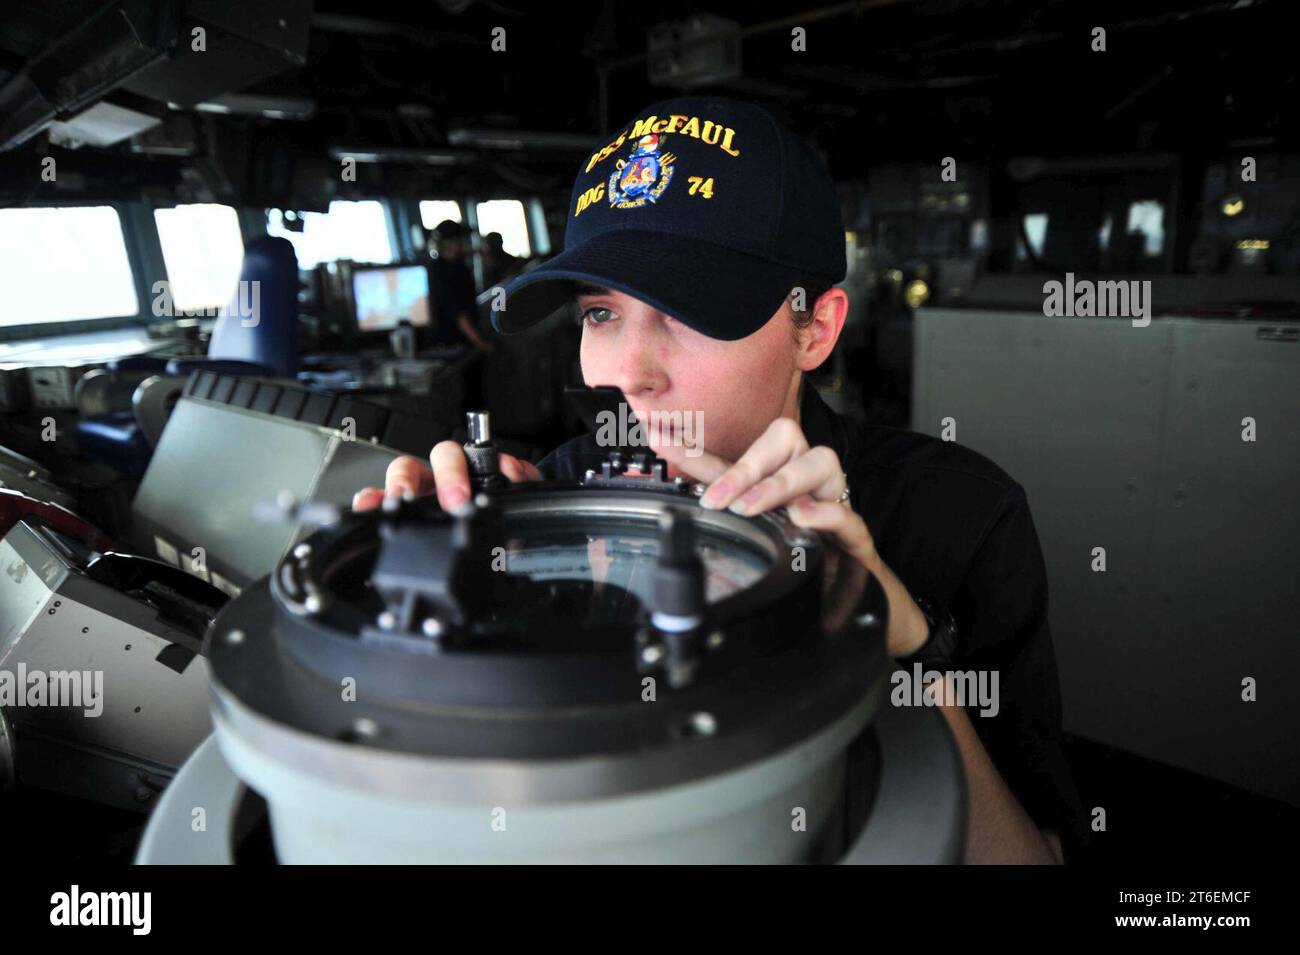 USS McFaul (DDG 74) 150524 Foto Stock